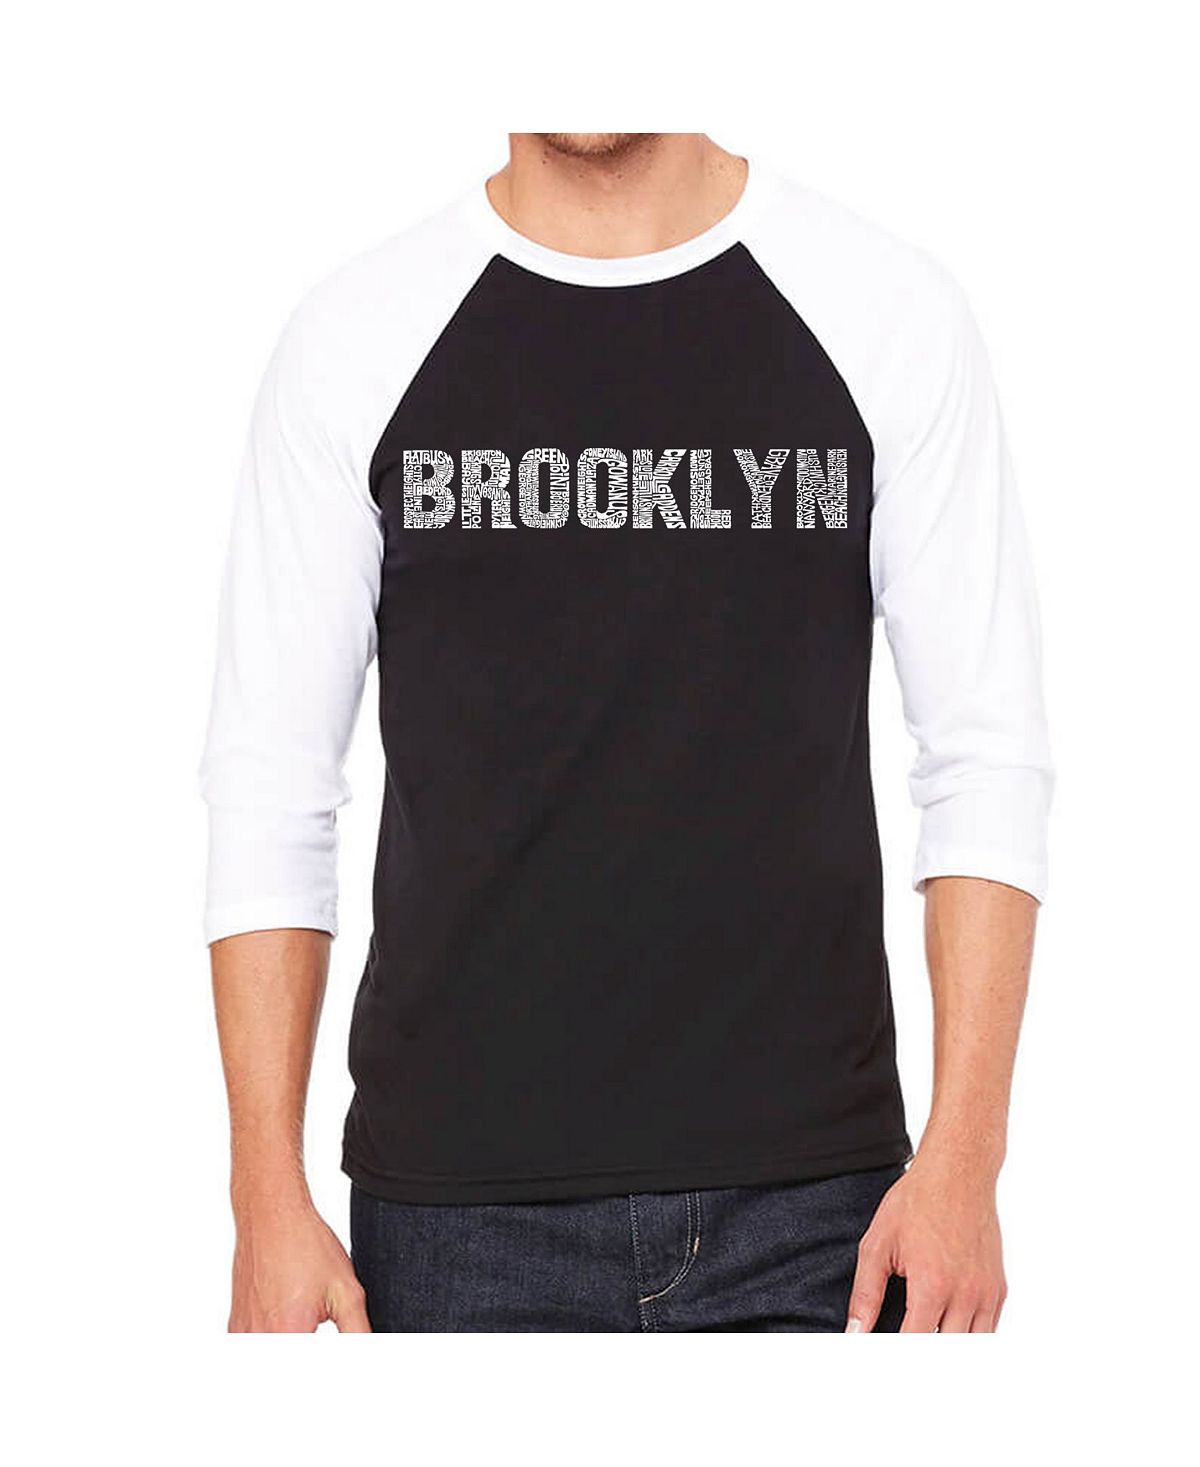 Мужская футболка реглан с надписью brooklyn neighborhoods LA Pop Art, черный